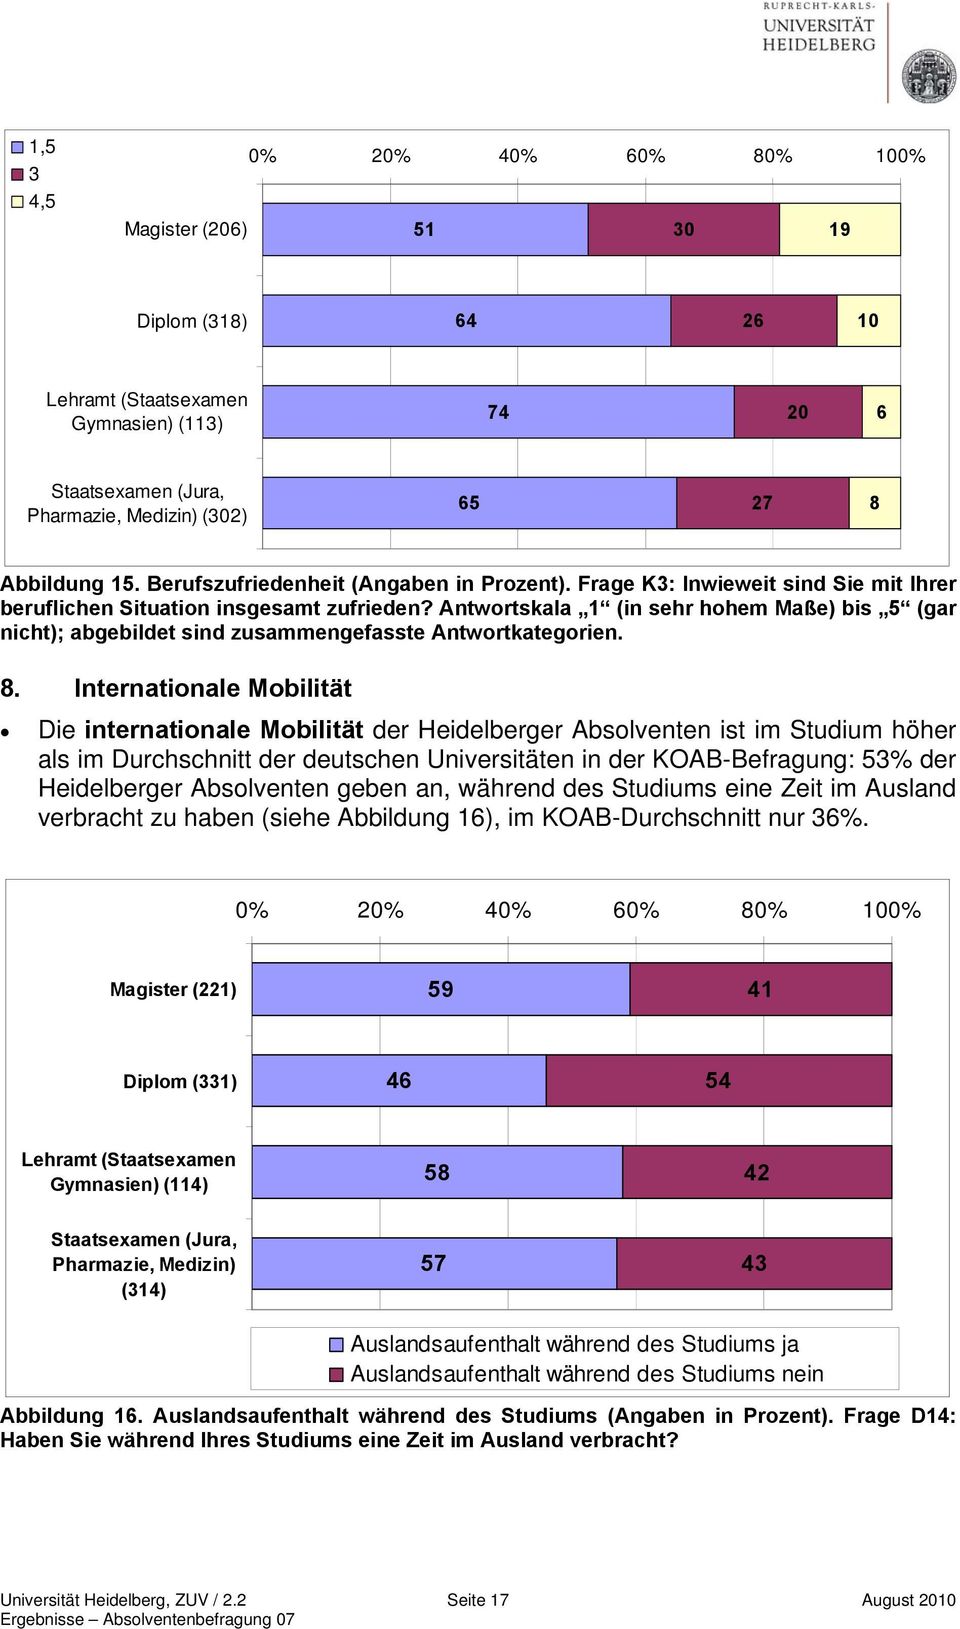 Internationale Mobilität Die internationale Mobilität der Heidelberger Absolventen ist im Studium höher als im Durchschnitt der deutschen Universitäten in der KOAB-Befragung: 53% der Heidelberger